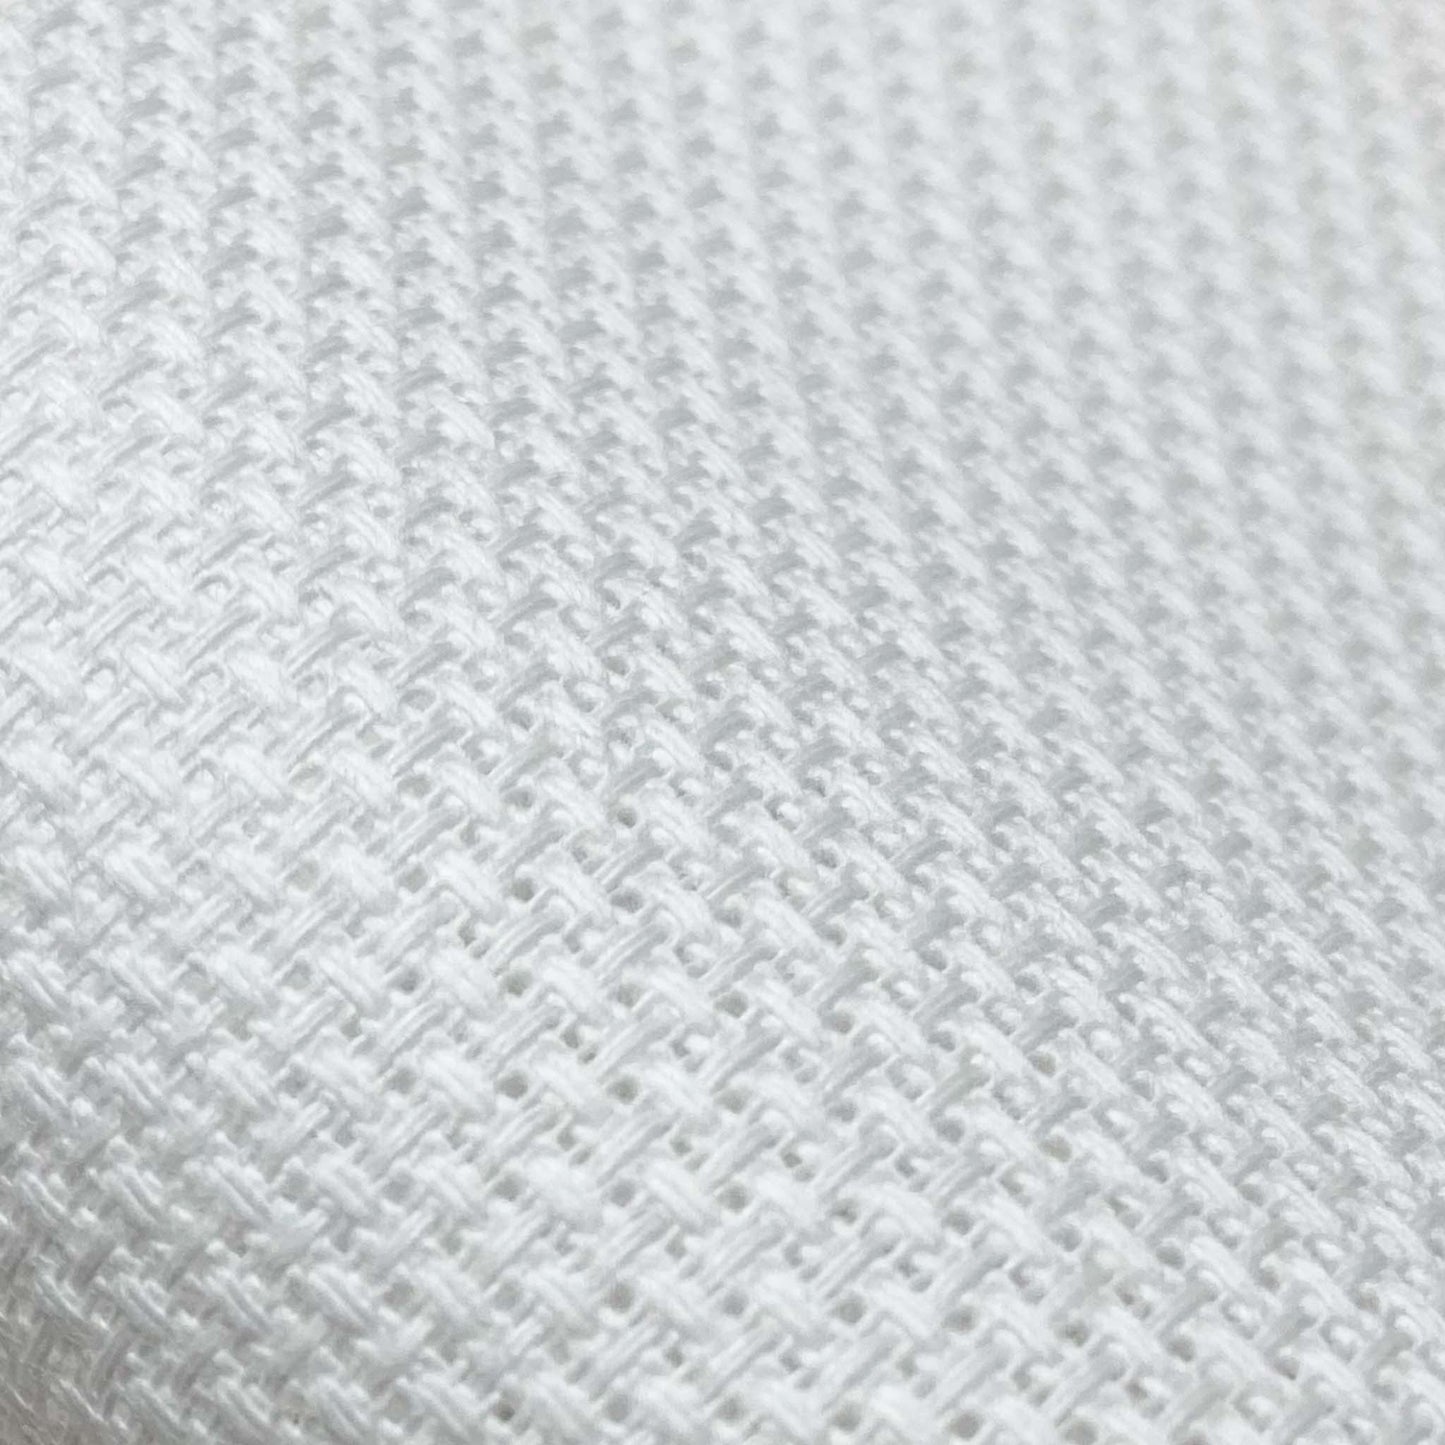 Aida fabric squares - 16ct White